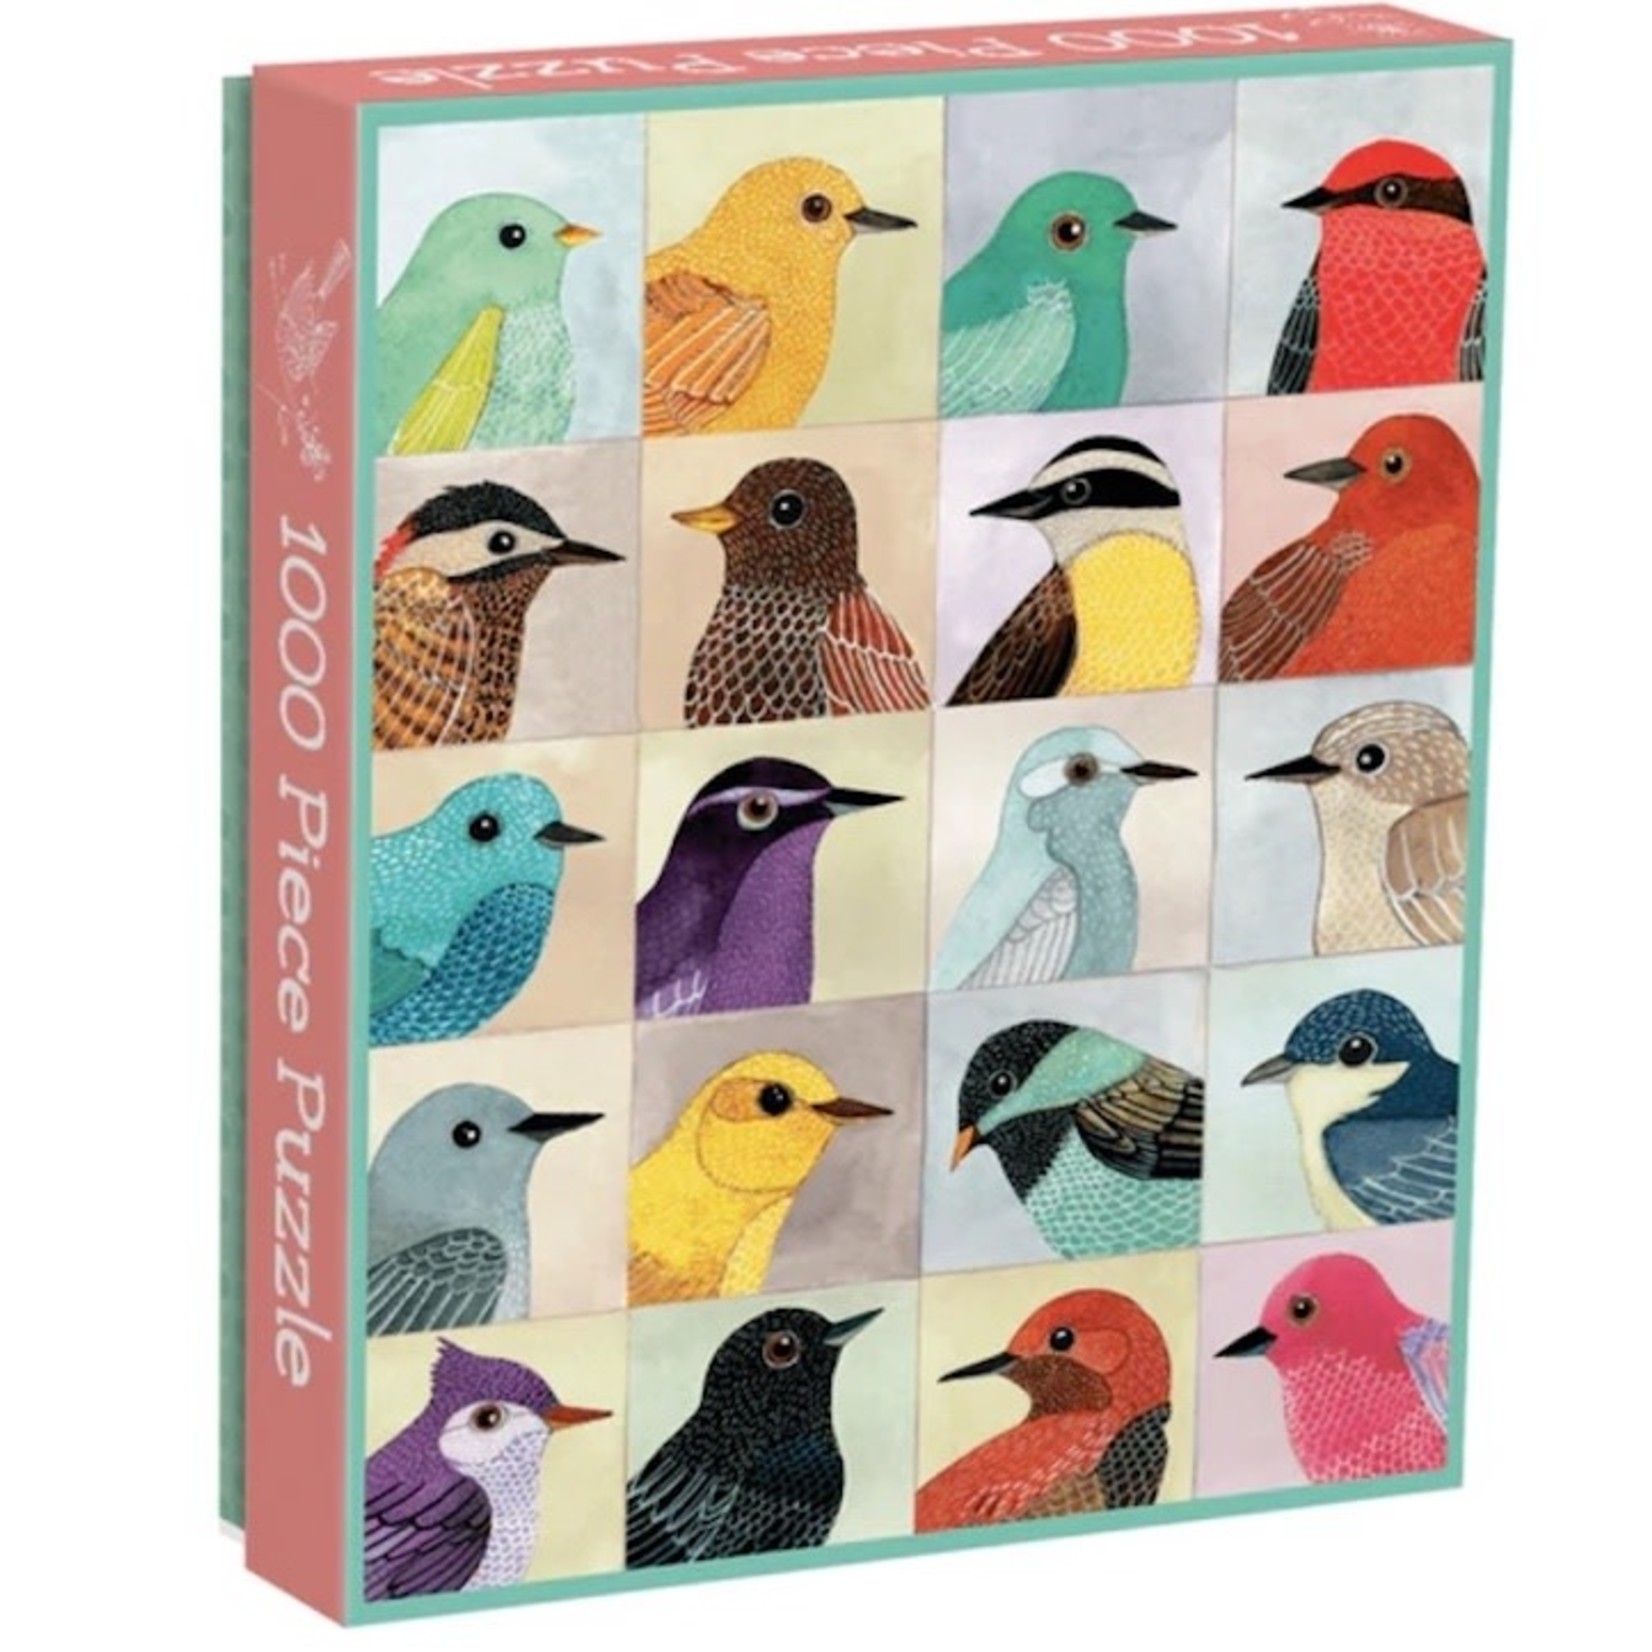 CHRONICLE BOOKS Avian Friends Puzzle 1000 Piece Puzzle